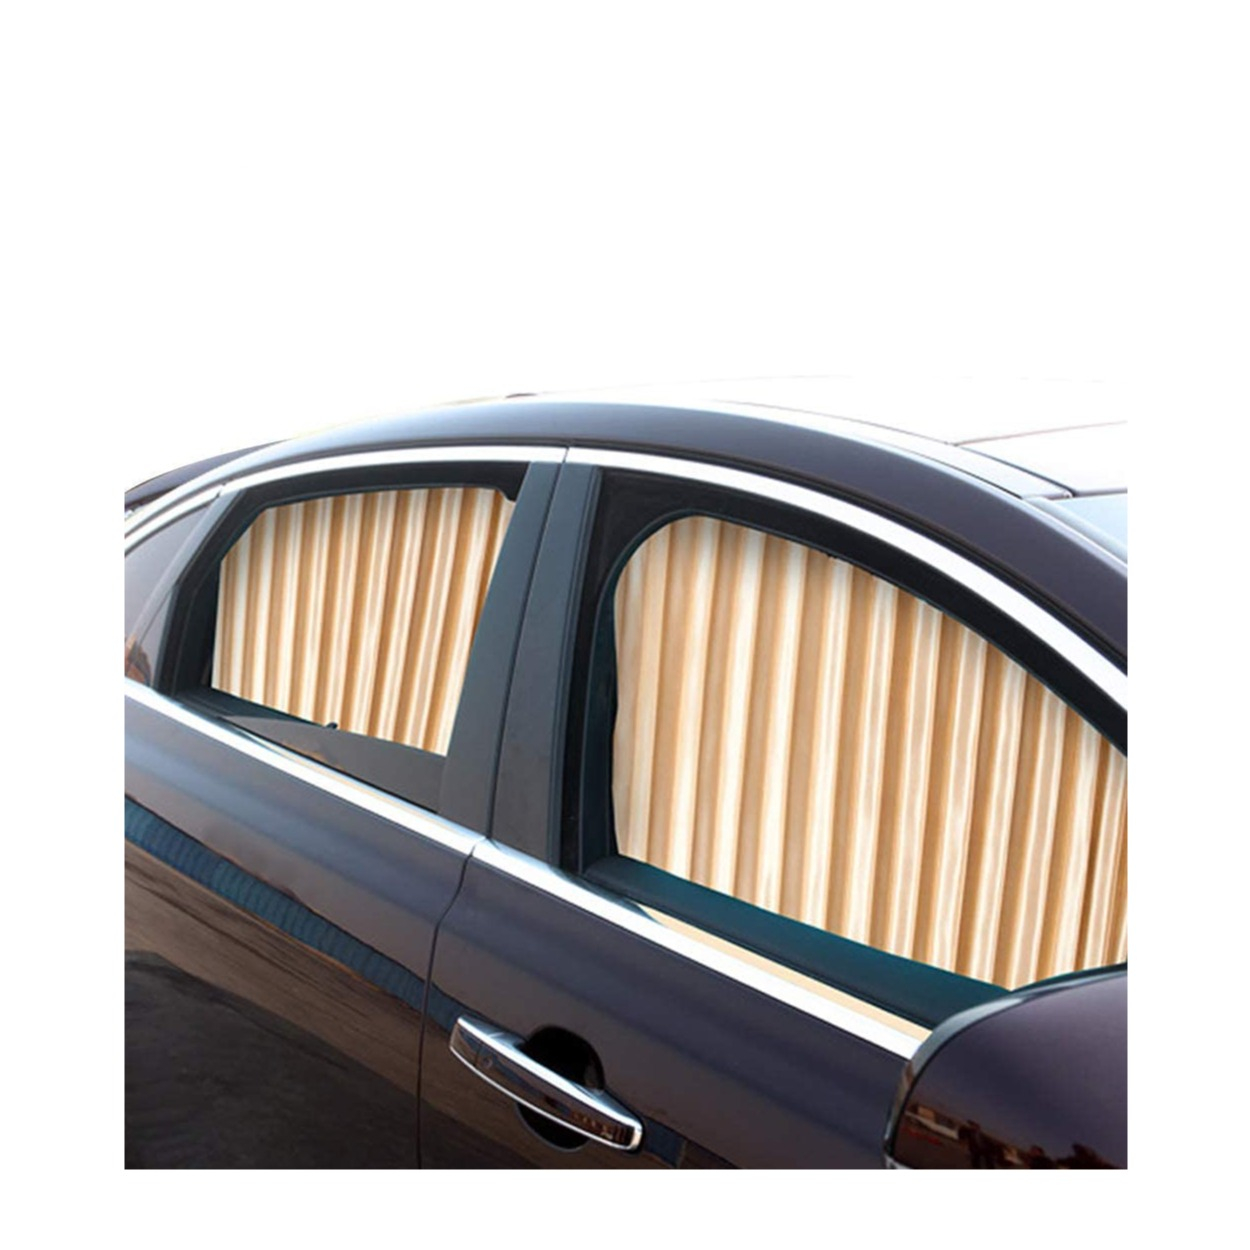 Kaufe Reise niedlich UV-Schutz Auto Vorhang Auto Sonnenschutz Vorhang  hintere Seitenscheibe Schatten Windschutzscheibe Visier